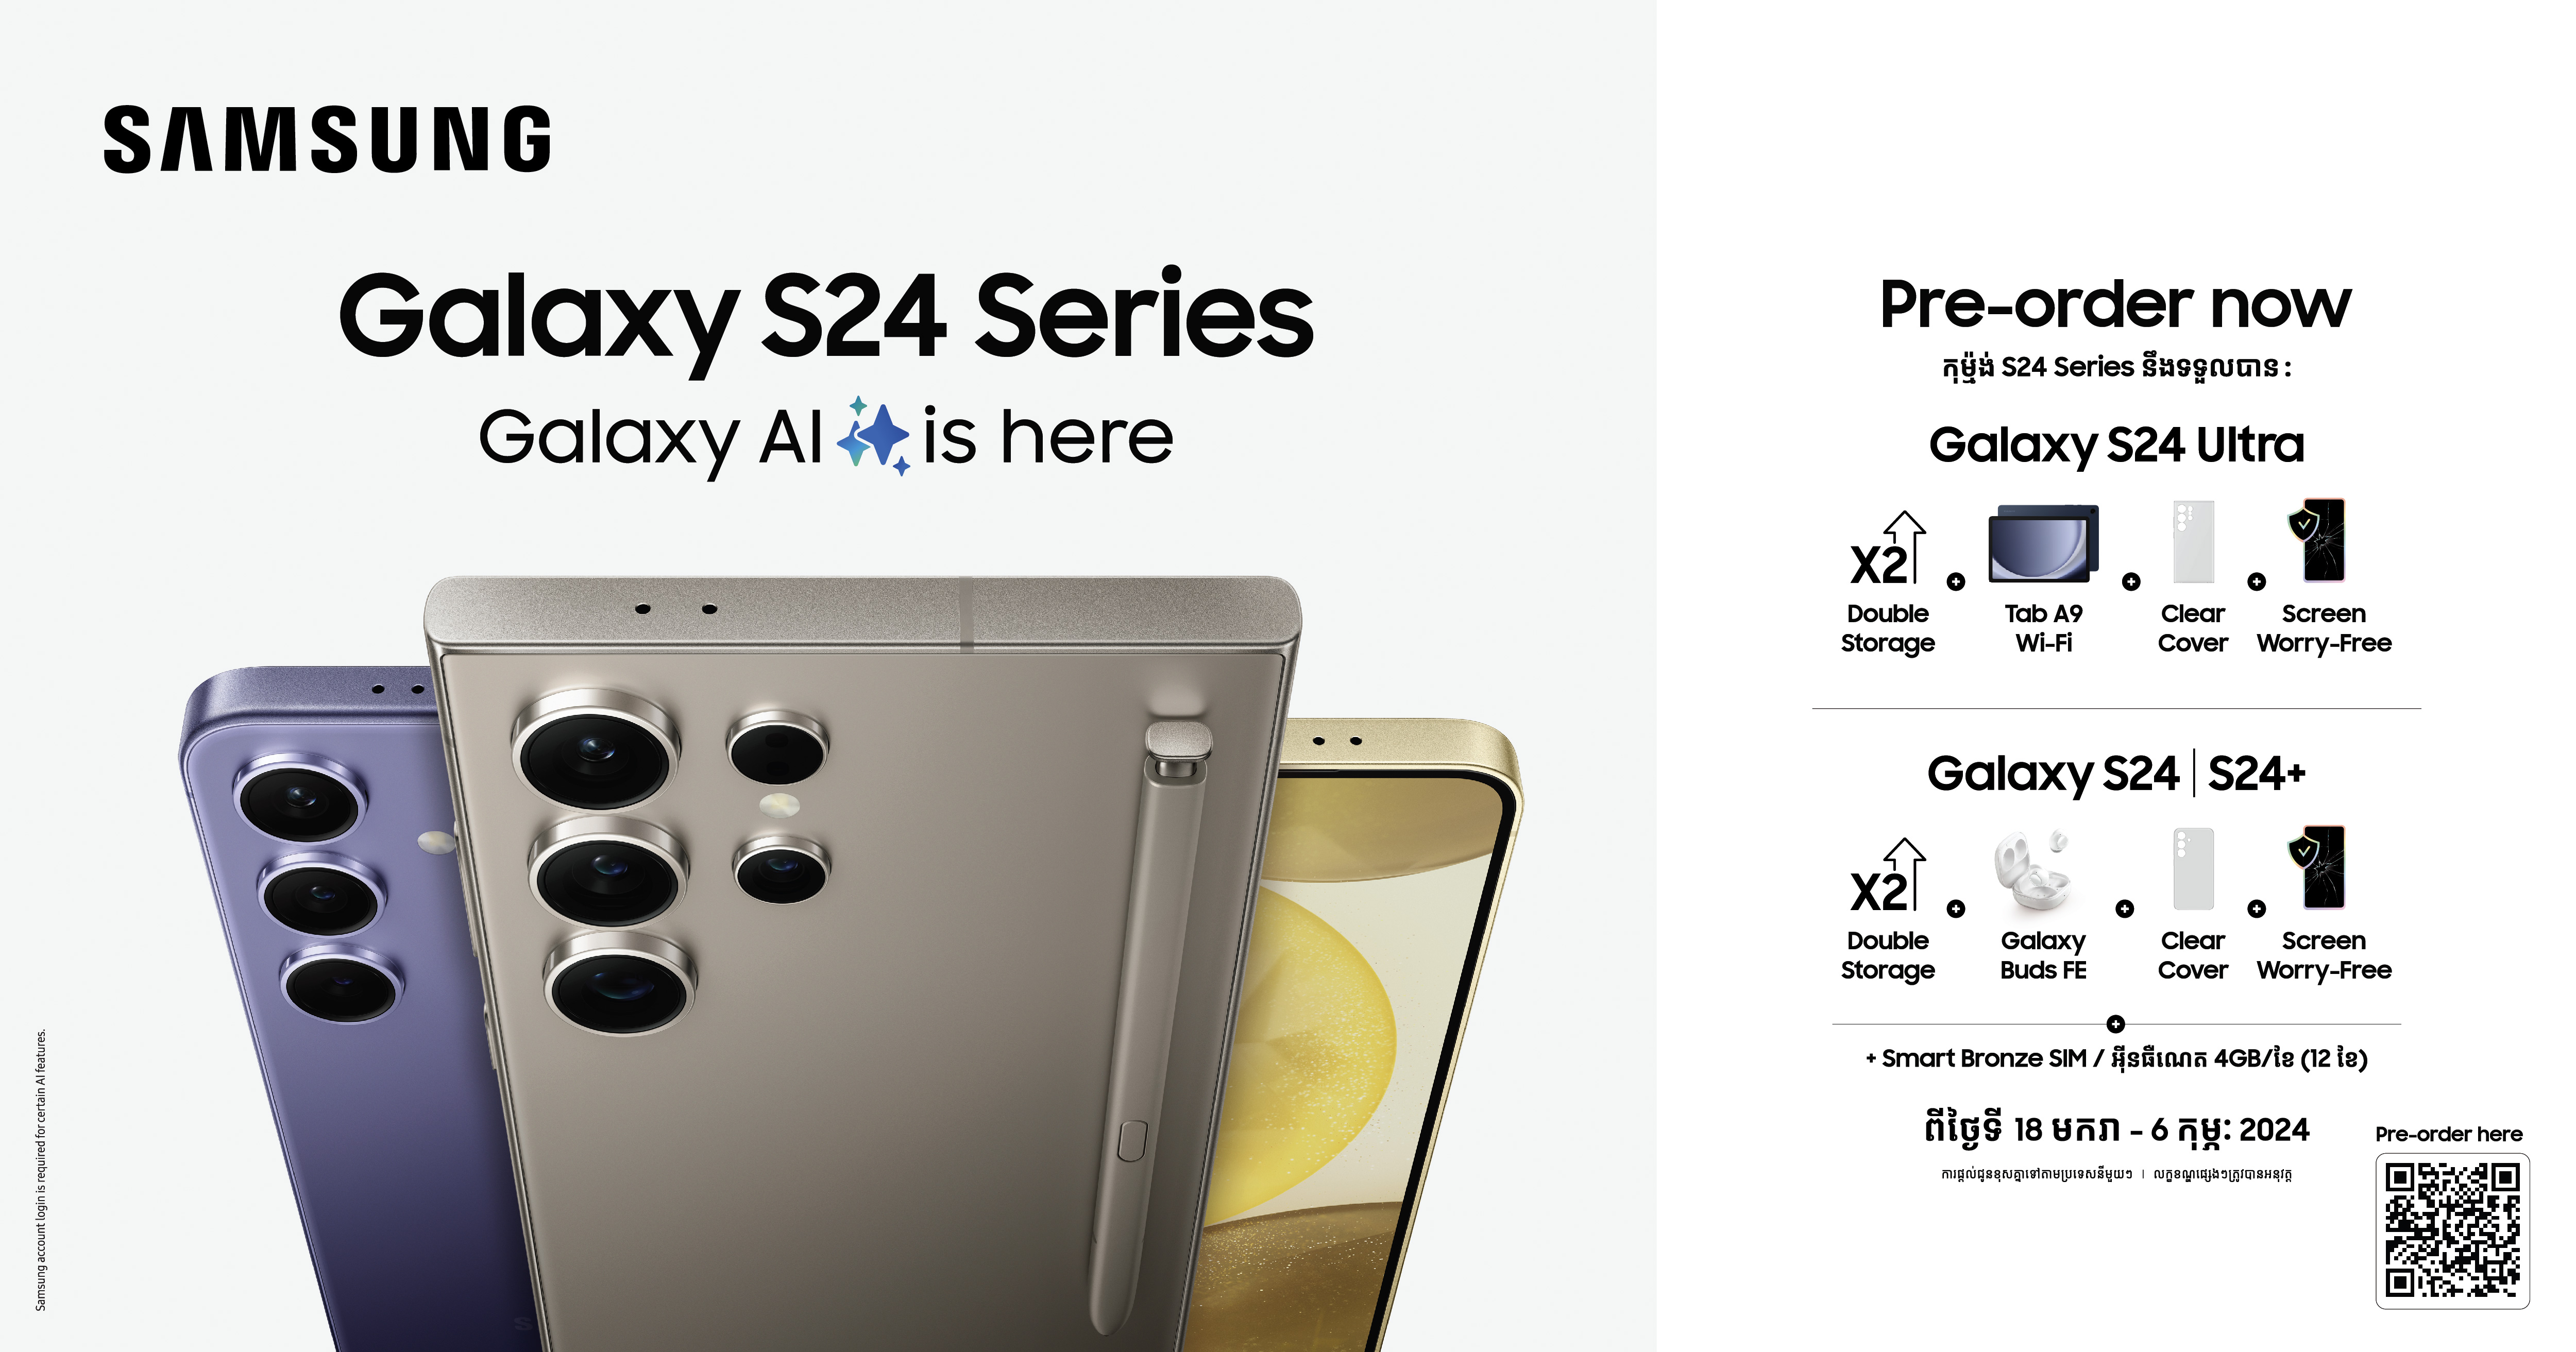 យុគសម័យនៃបច្ចេកវិទ្យា AI ដំបូងគេបង្អស់បានមកដល់ប្រទេសកម្ពុជាយើងហើយ នៅលើ Samsung Galaxy S24 Series! បើកឱ្យ Pre-Order និងមានកាដូថែមជូនដ៏រំភើប!